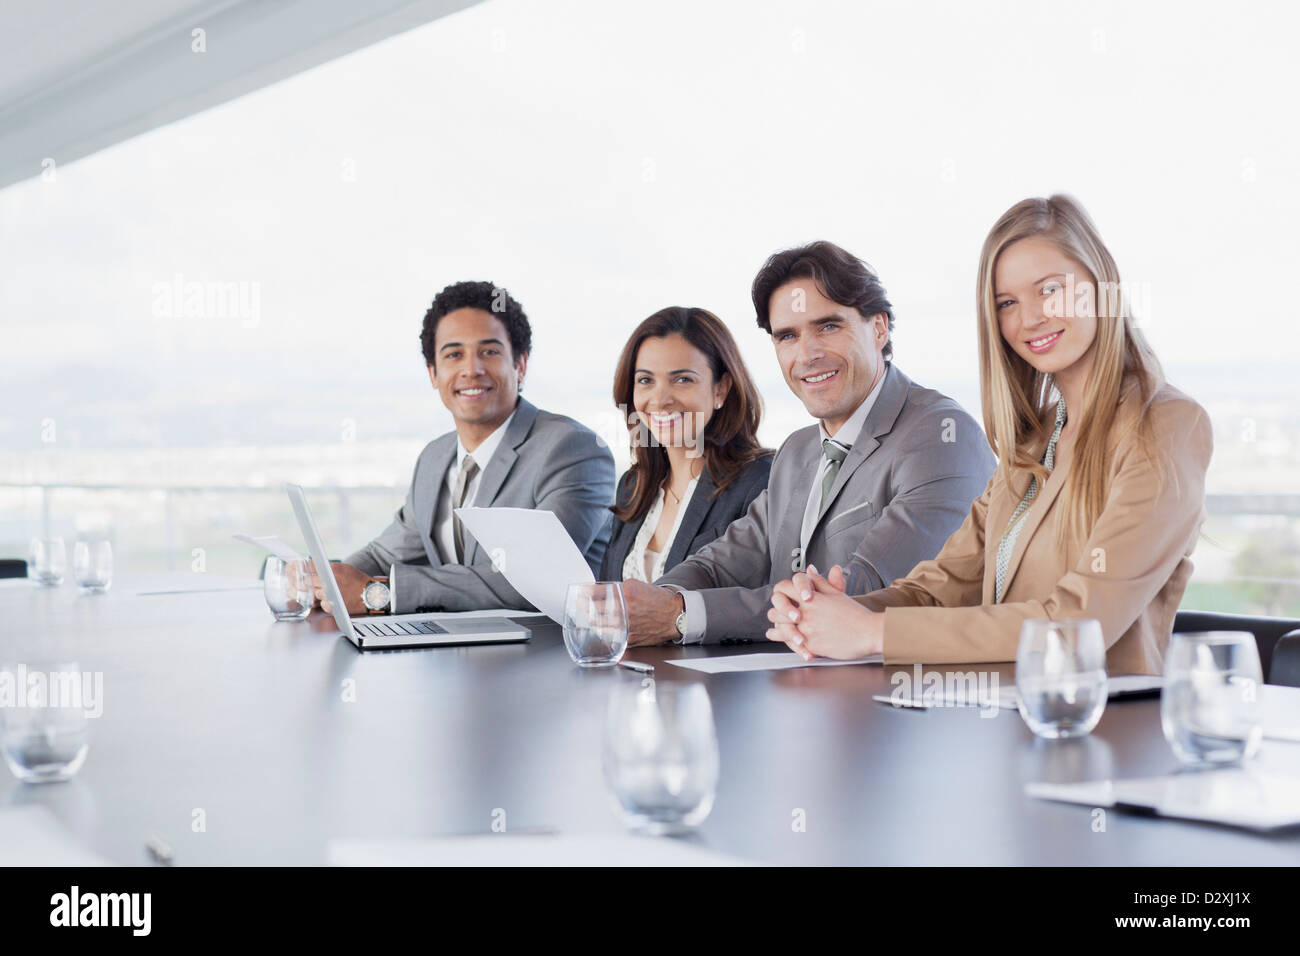 Porträt des Lächelns Geschäftsleute sitzen in einer Reihe im Konferenzraum Stockfoto